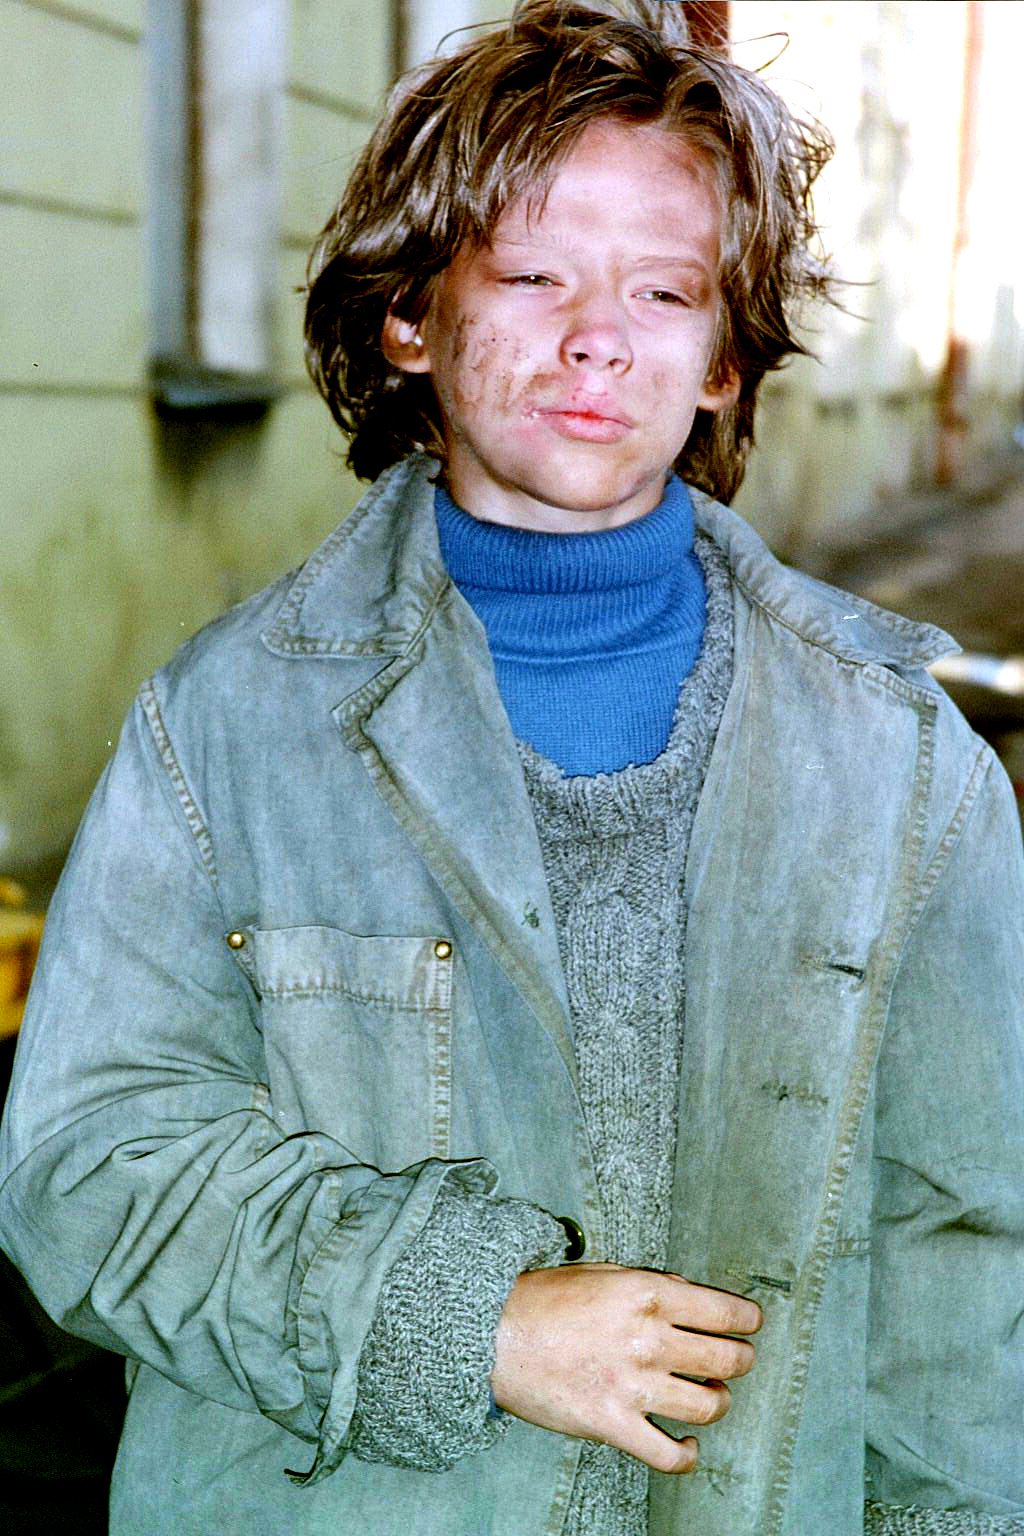 Devon Alan as the Mute, Homeless Street Artist in 